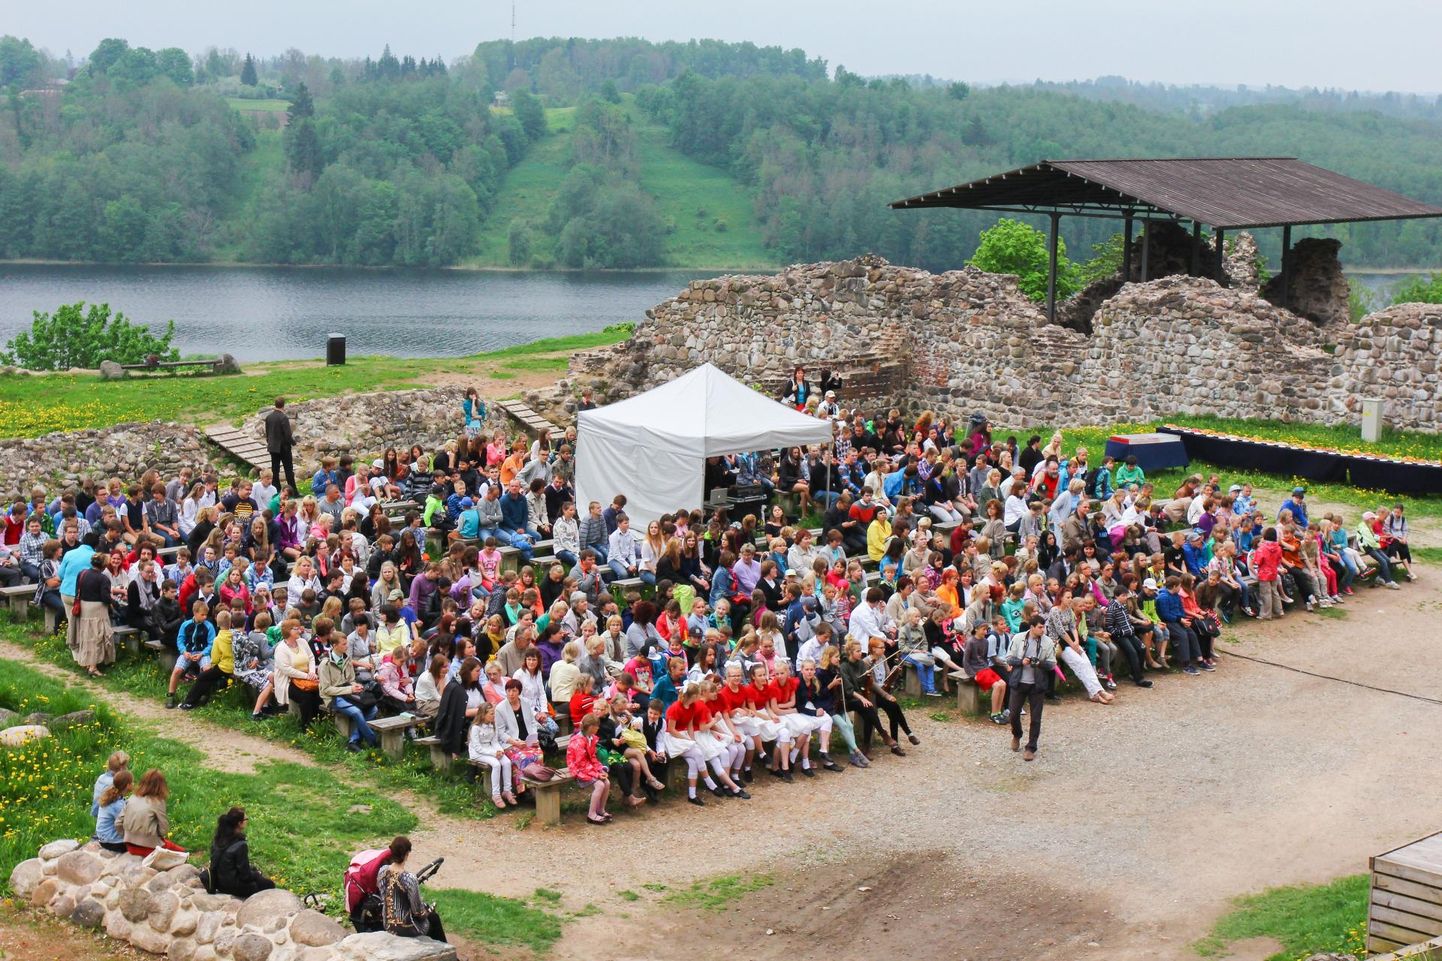 Viljandi lossimägedes asuvale Kaevumäe lava ette mahub umbes 500 inimest ehk umbes nii palju kui maakonna elanike arv eelmise aastaga väiksemaks jäi. Foto on illustratiivne.